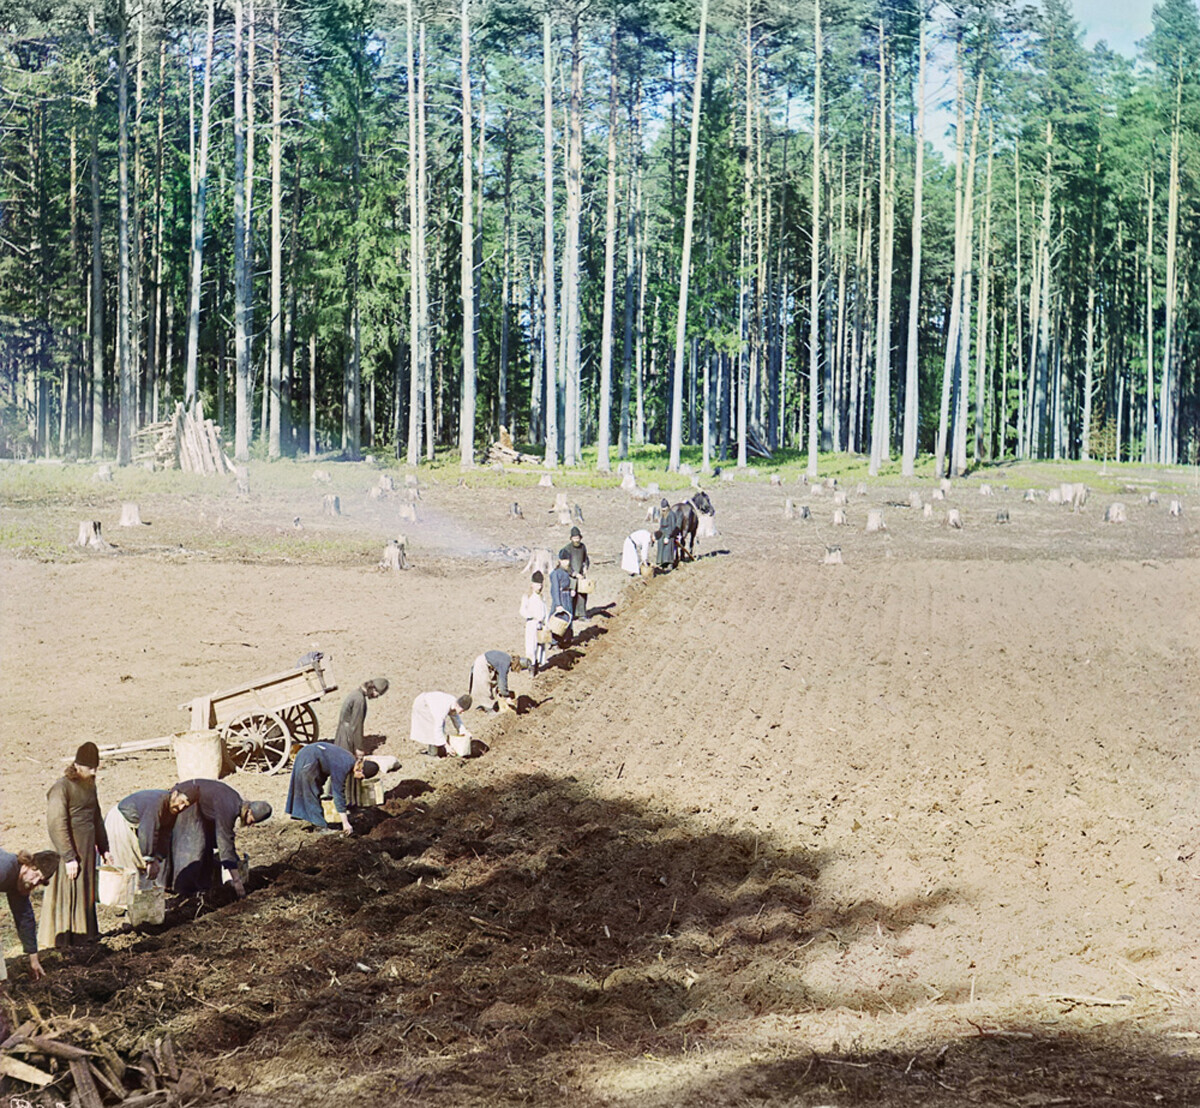 Monges trabalhando. Plantando batatas, 1910
